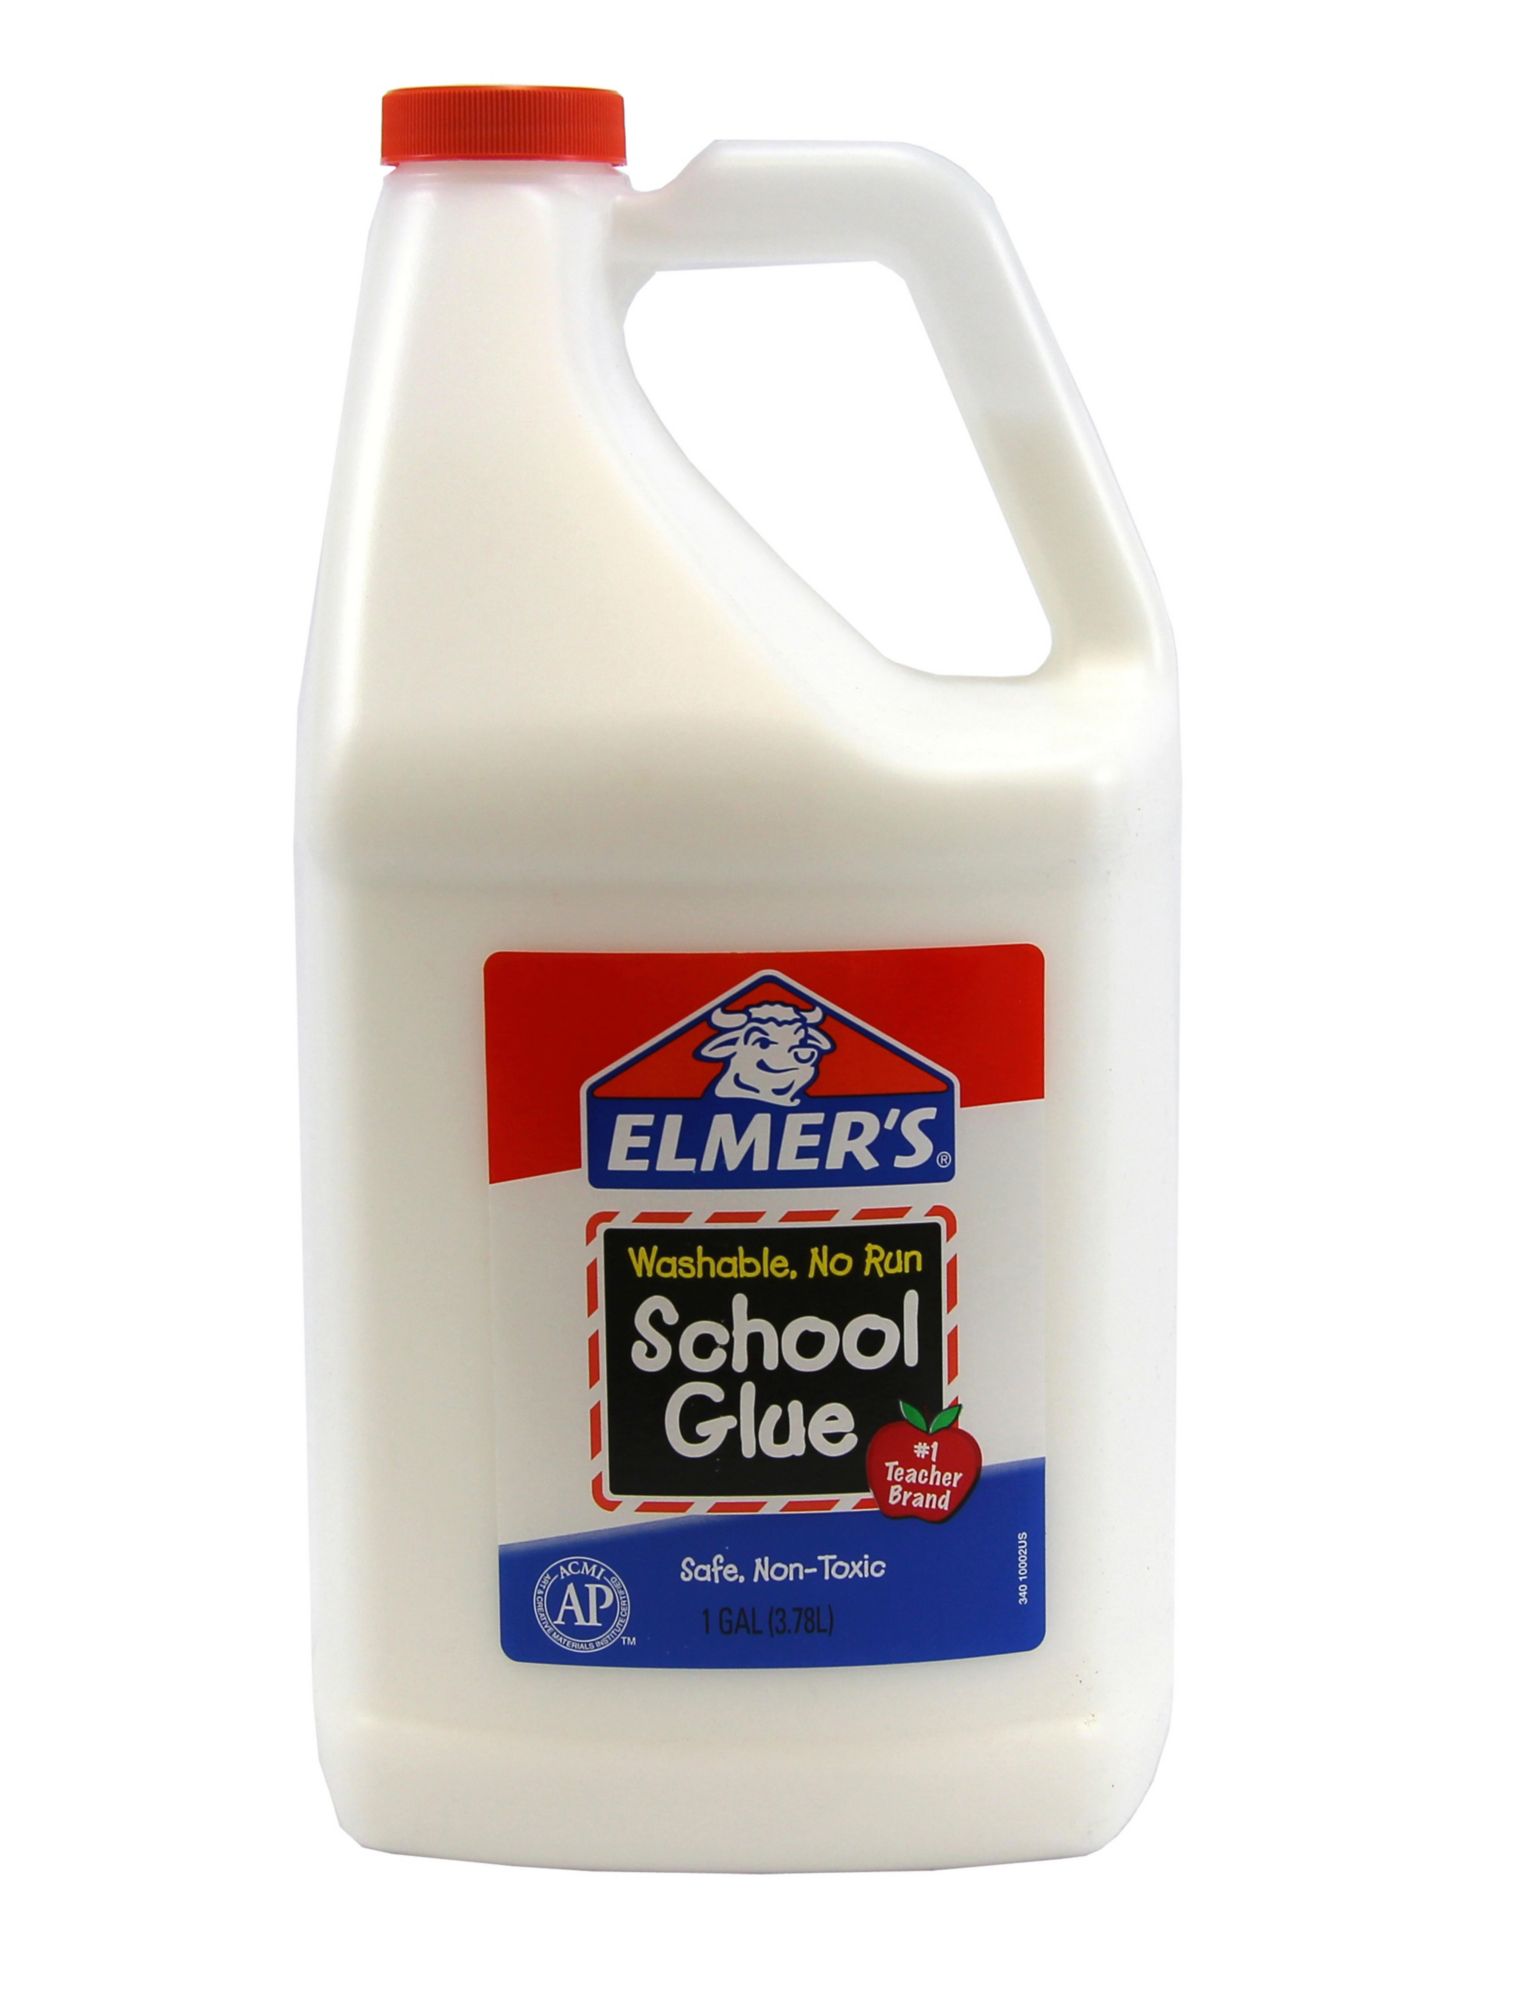 Elmer's School Glue, 1 gal.